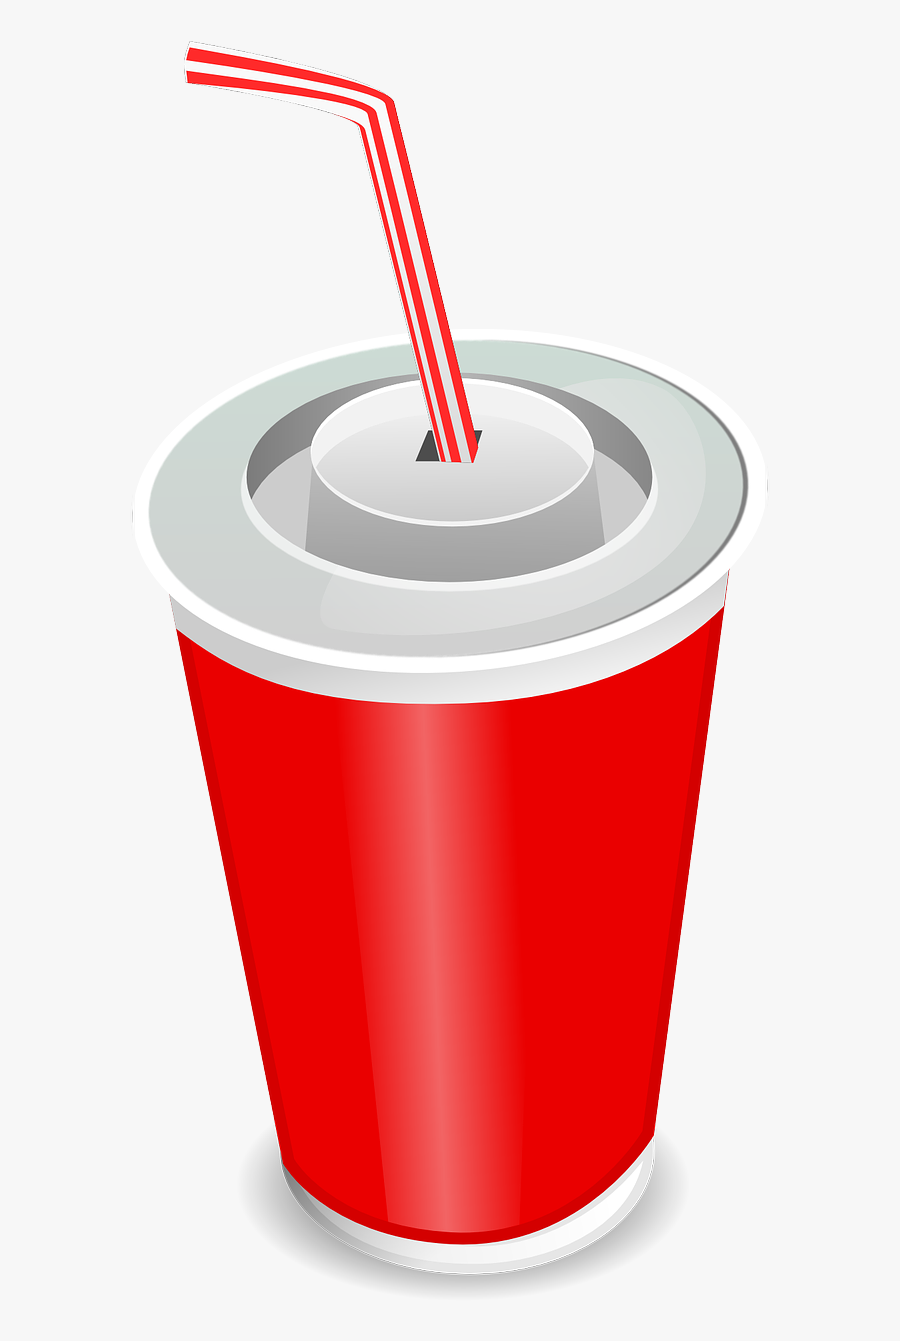 Soda Cup Clipart - Soda Cup Clip Art, Transparent Clipart